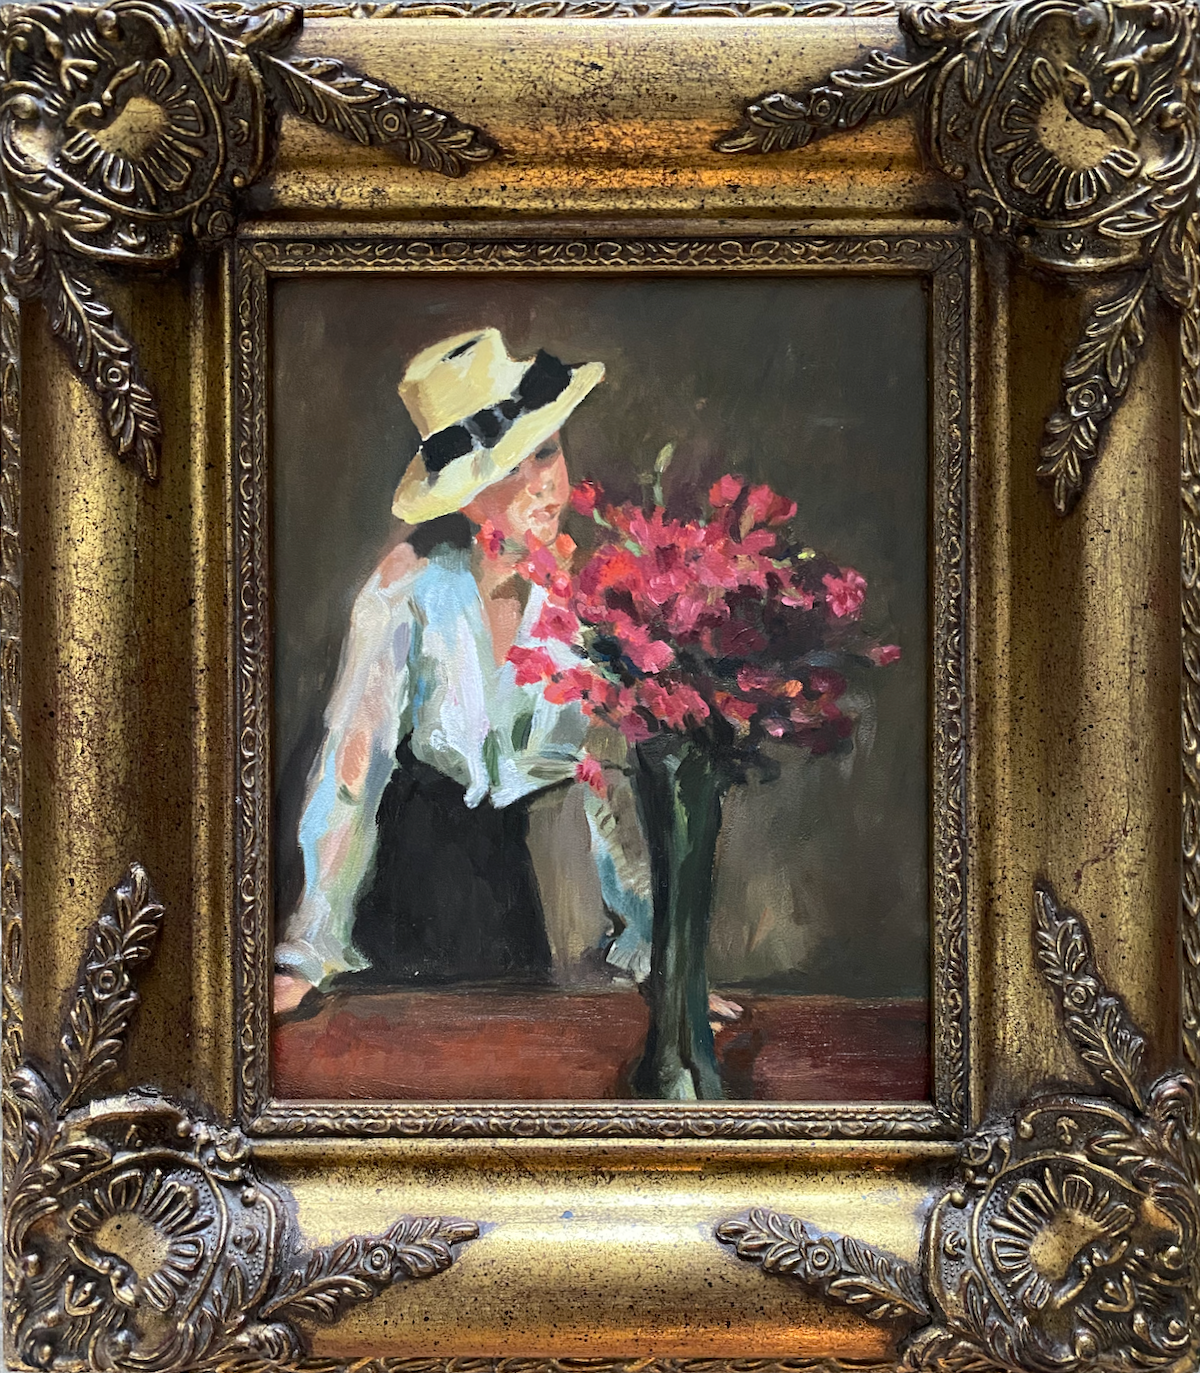 vrouw met hoed, witte blouse en donkere rok staand achter een grote vaas met rode bloemen